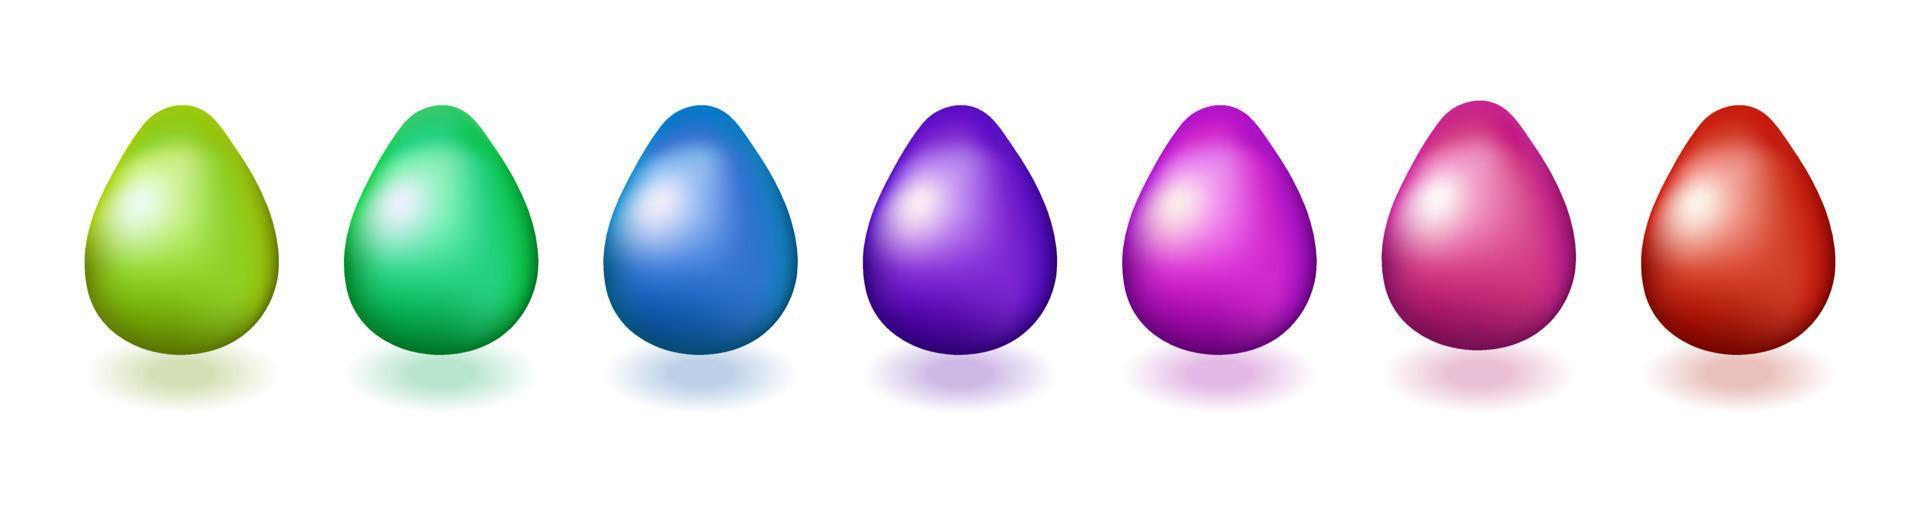 conjunto de ilustração vetorial realista de ovos de páscoa vetor